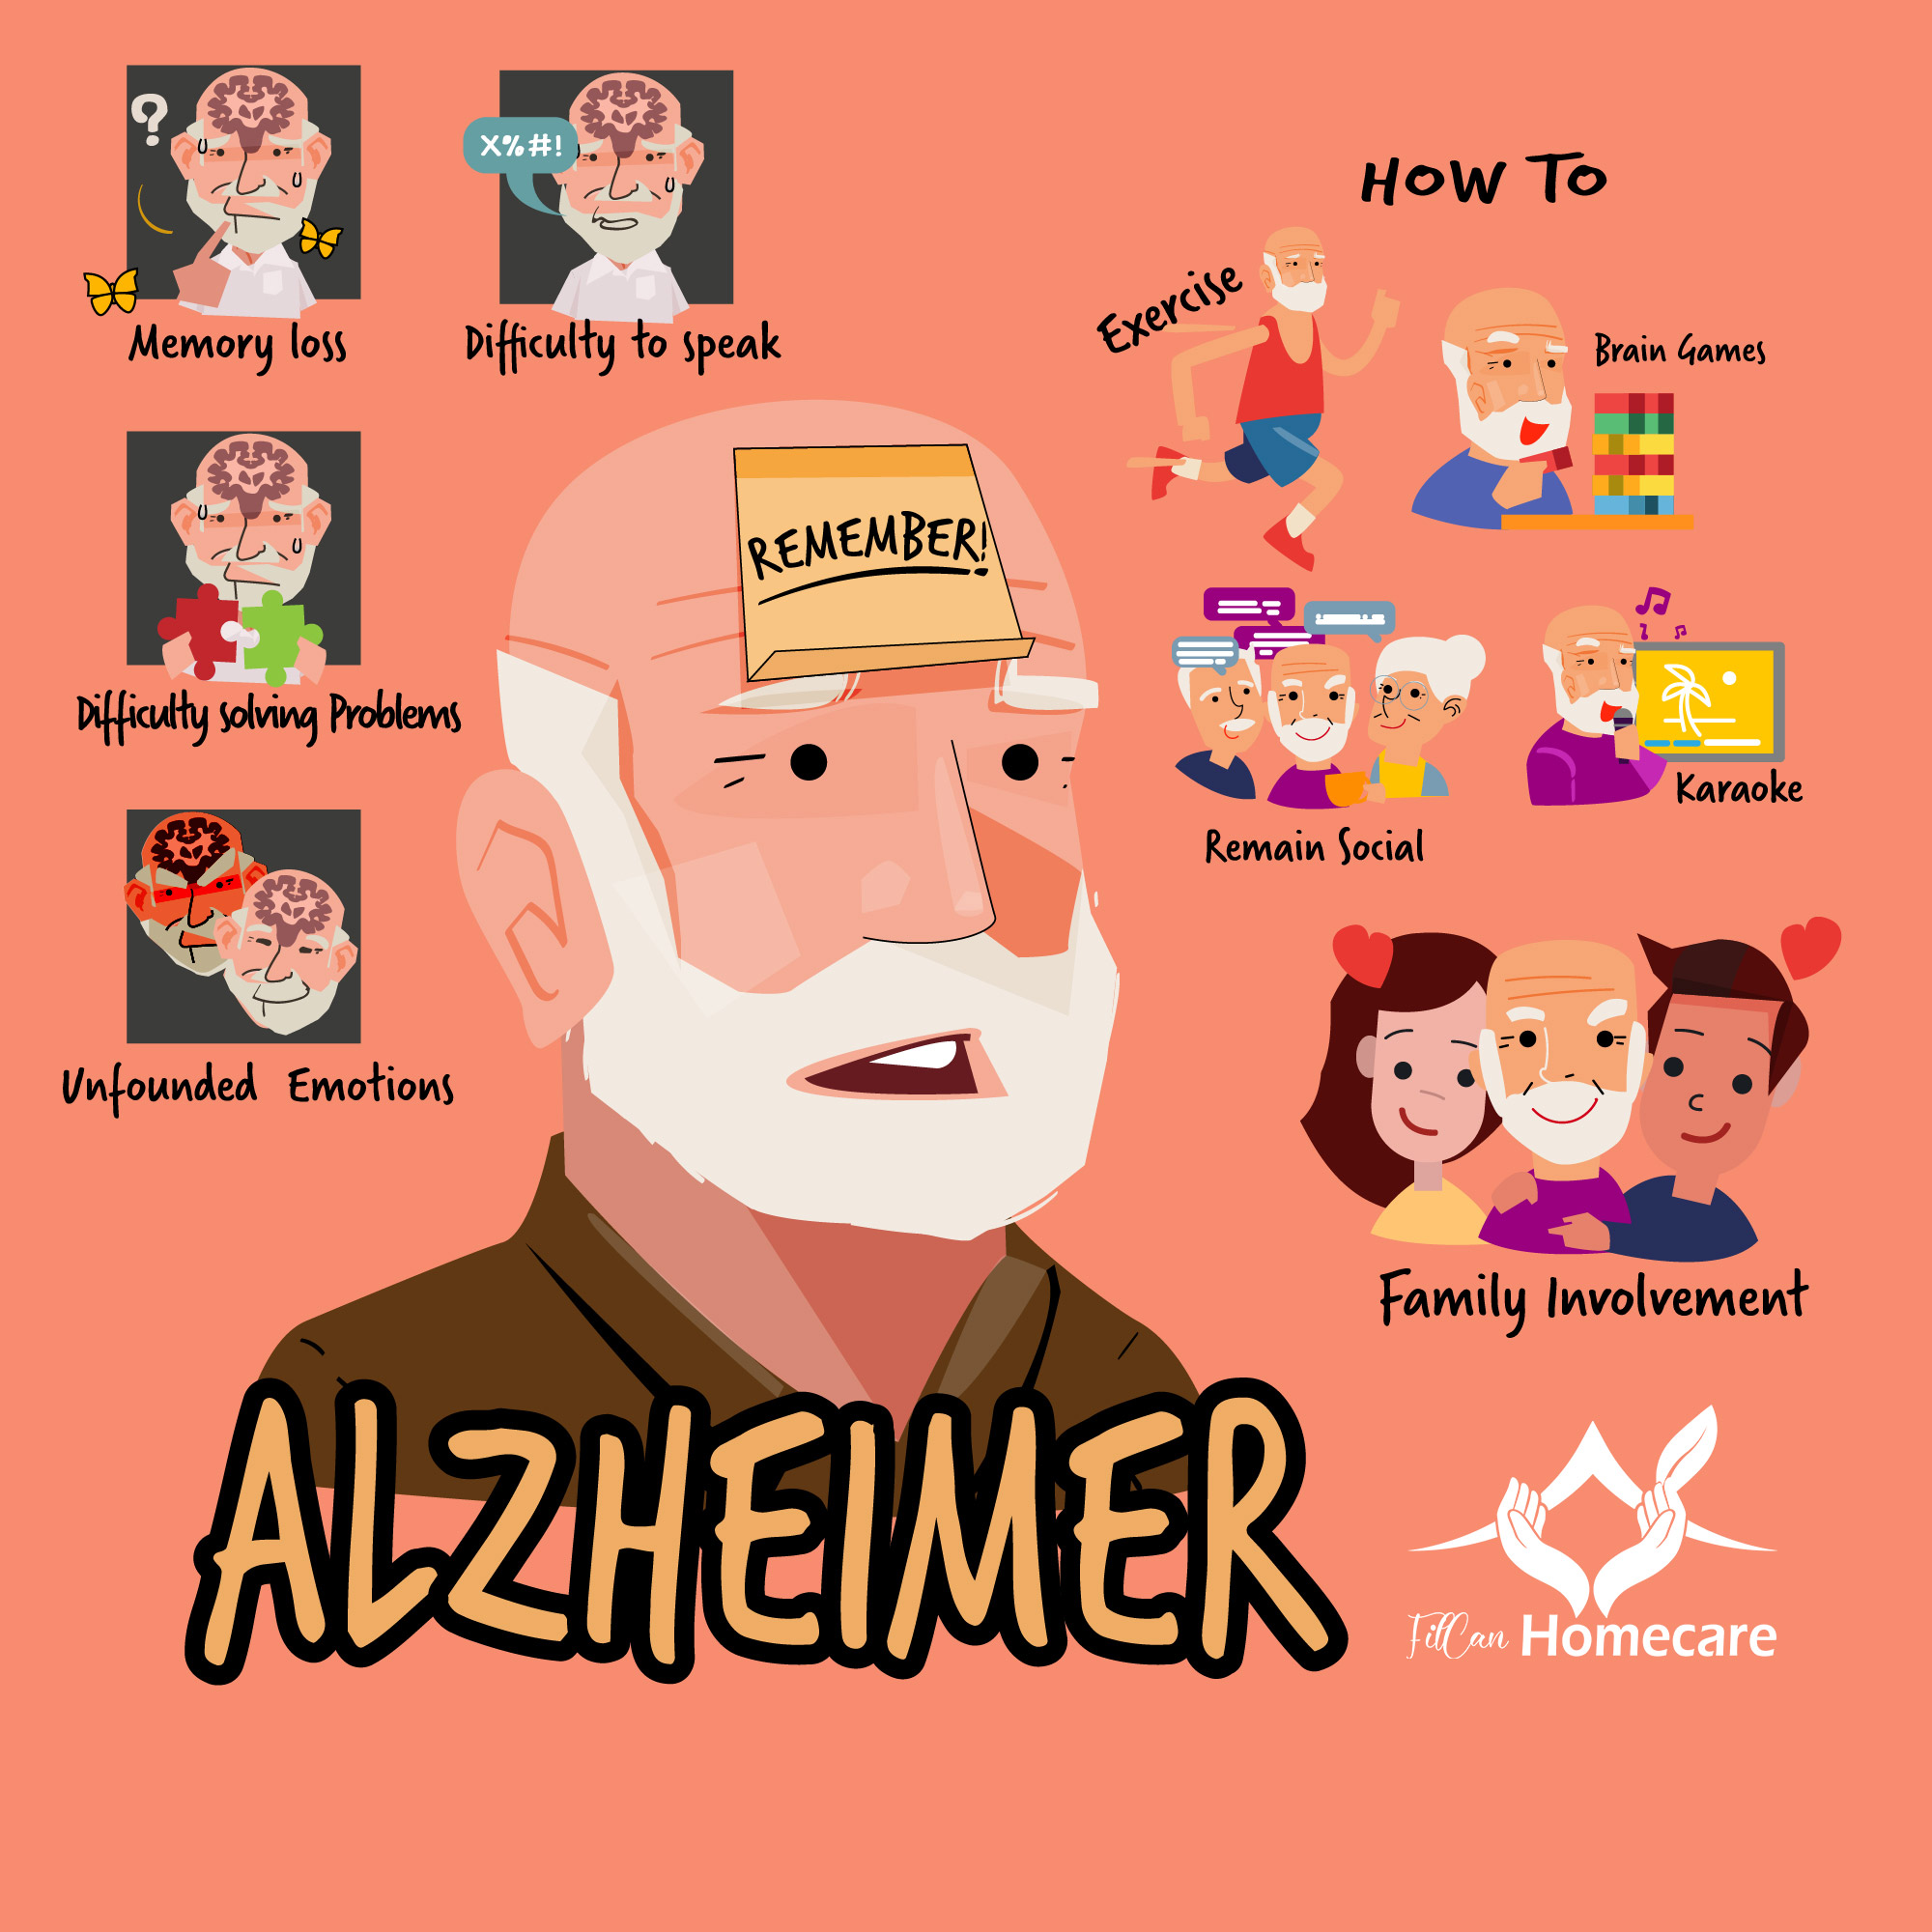 Alzheimers-ARtwork--Filcan-Homecare-100